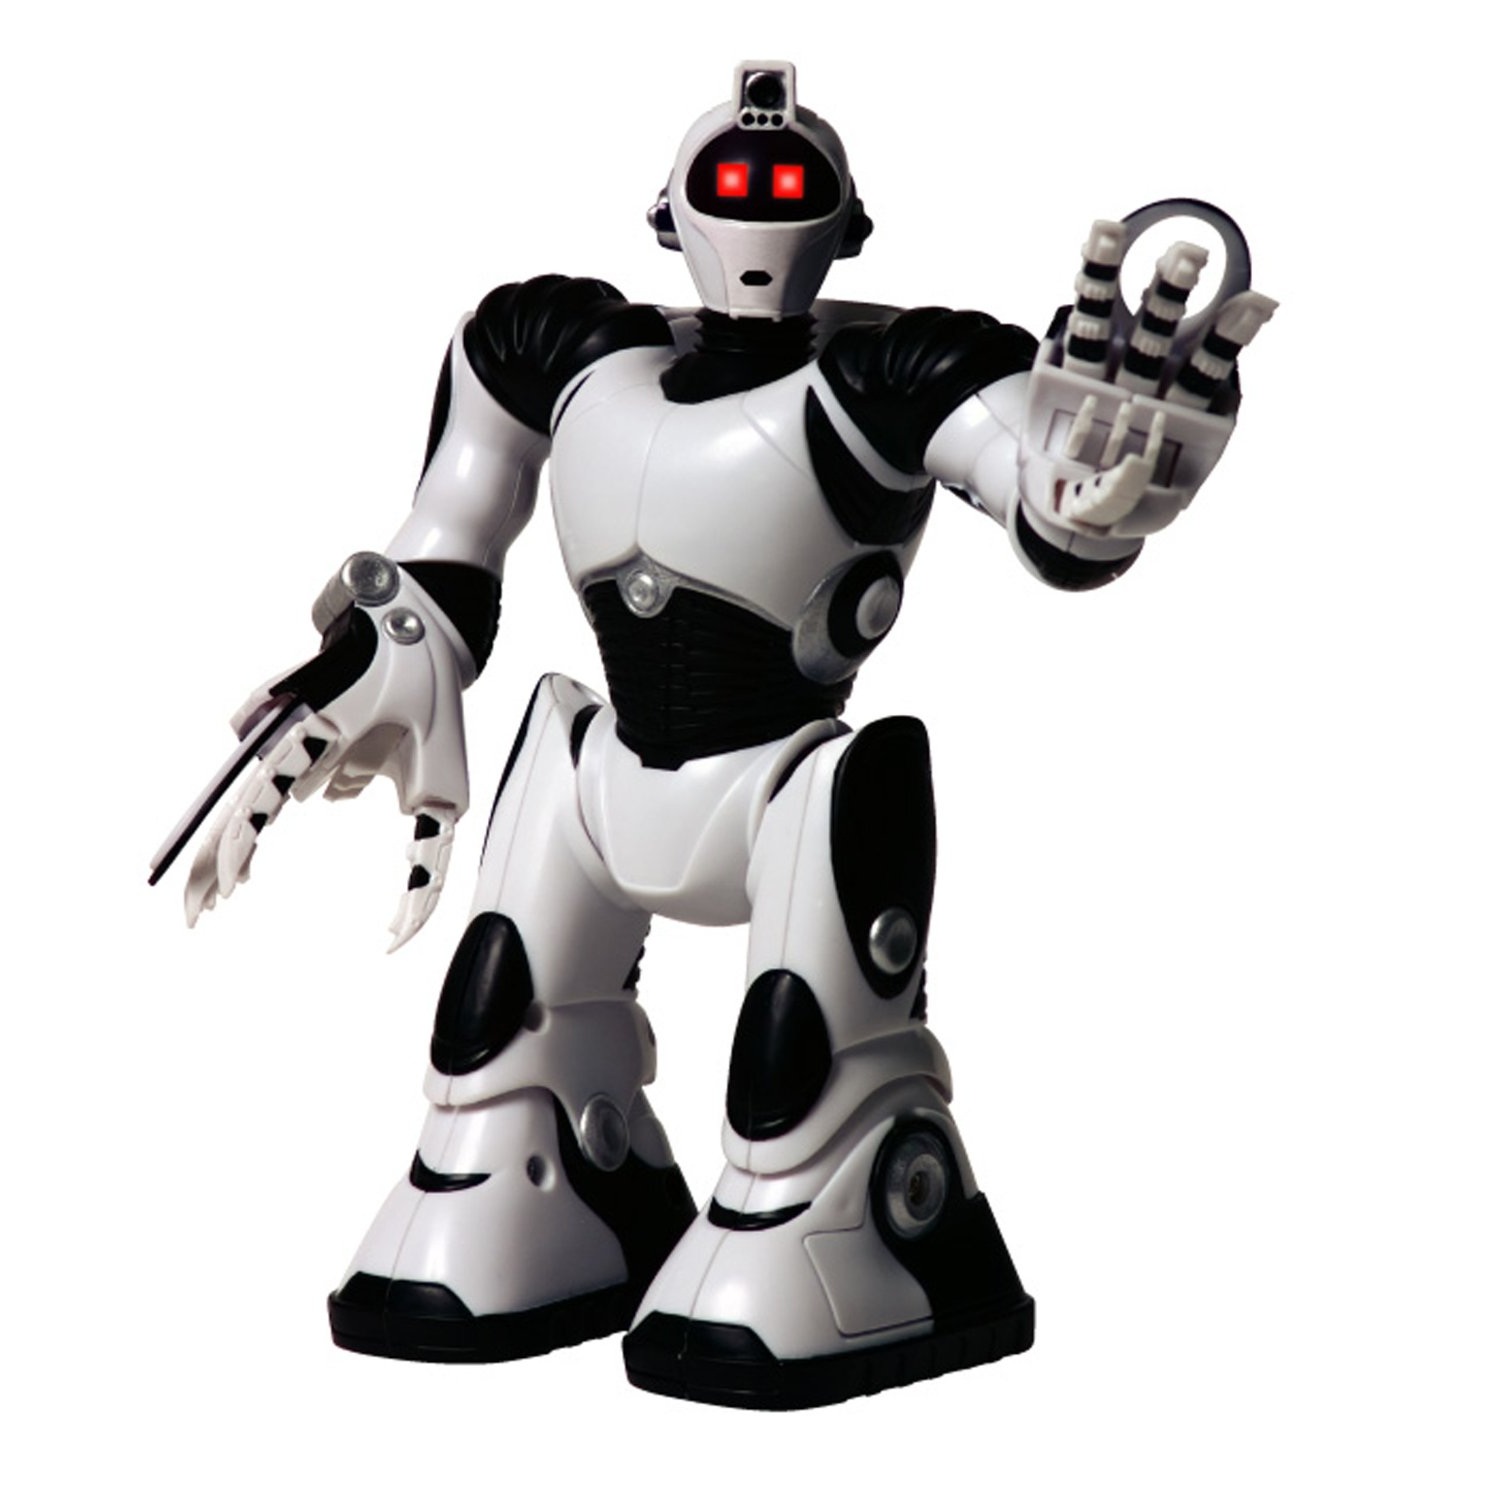 Игры белый робот. Робот WOWWEE Robosapien. Робот WOWWEE Robosapien 2. Мини робот (Робосапиен v2). Интерактивная игрушка робот WOWWEE Robosapien.